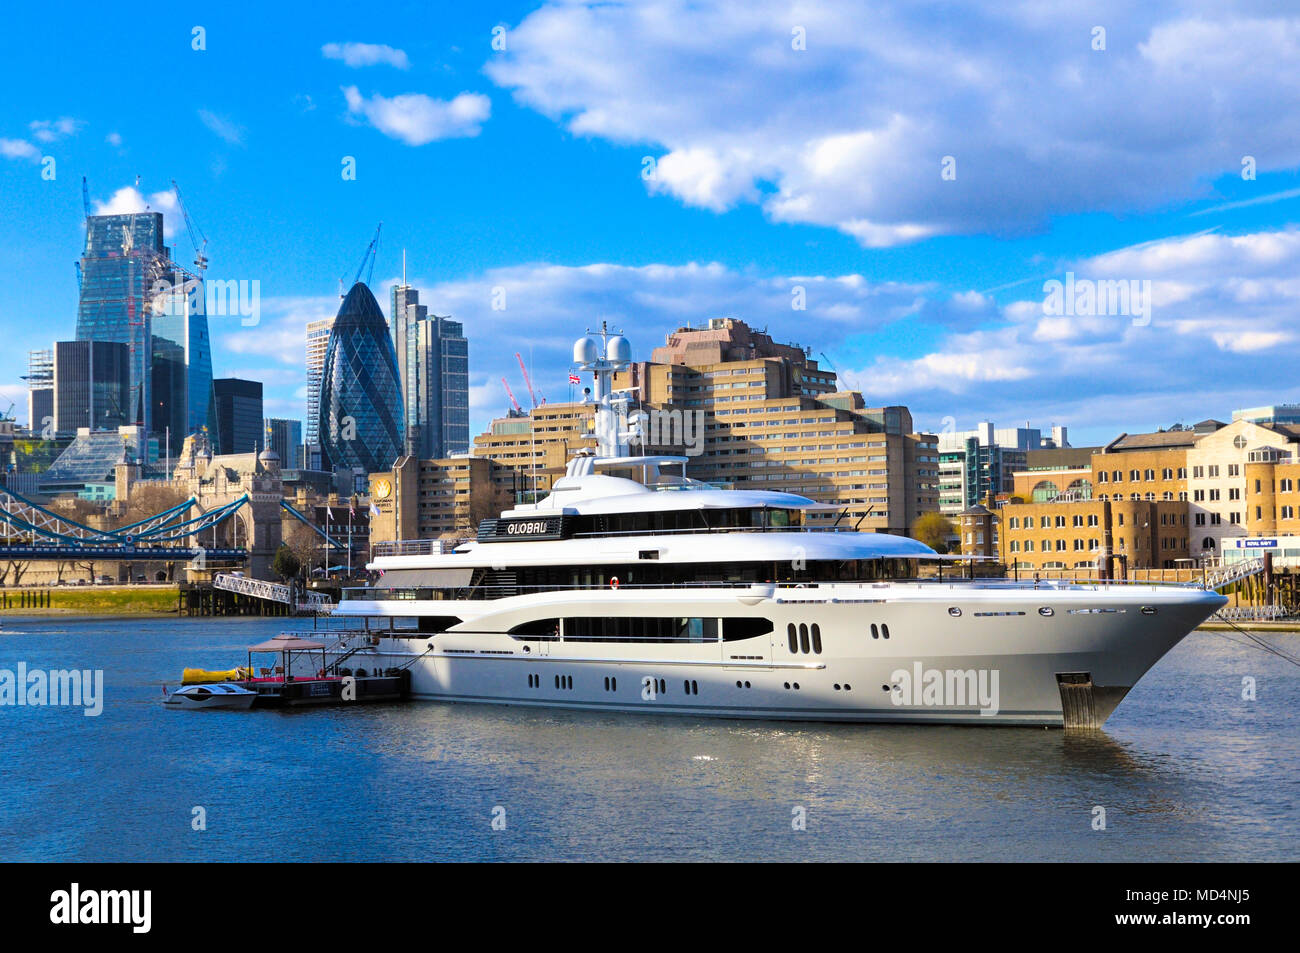 'Global' Superyacht amarré sur la Tamise, Londres, Angleterre, Royaume-Uni Banque D'Images